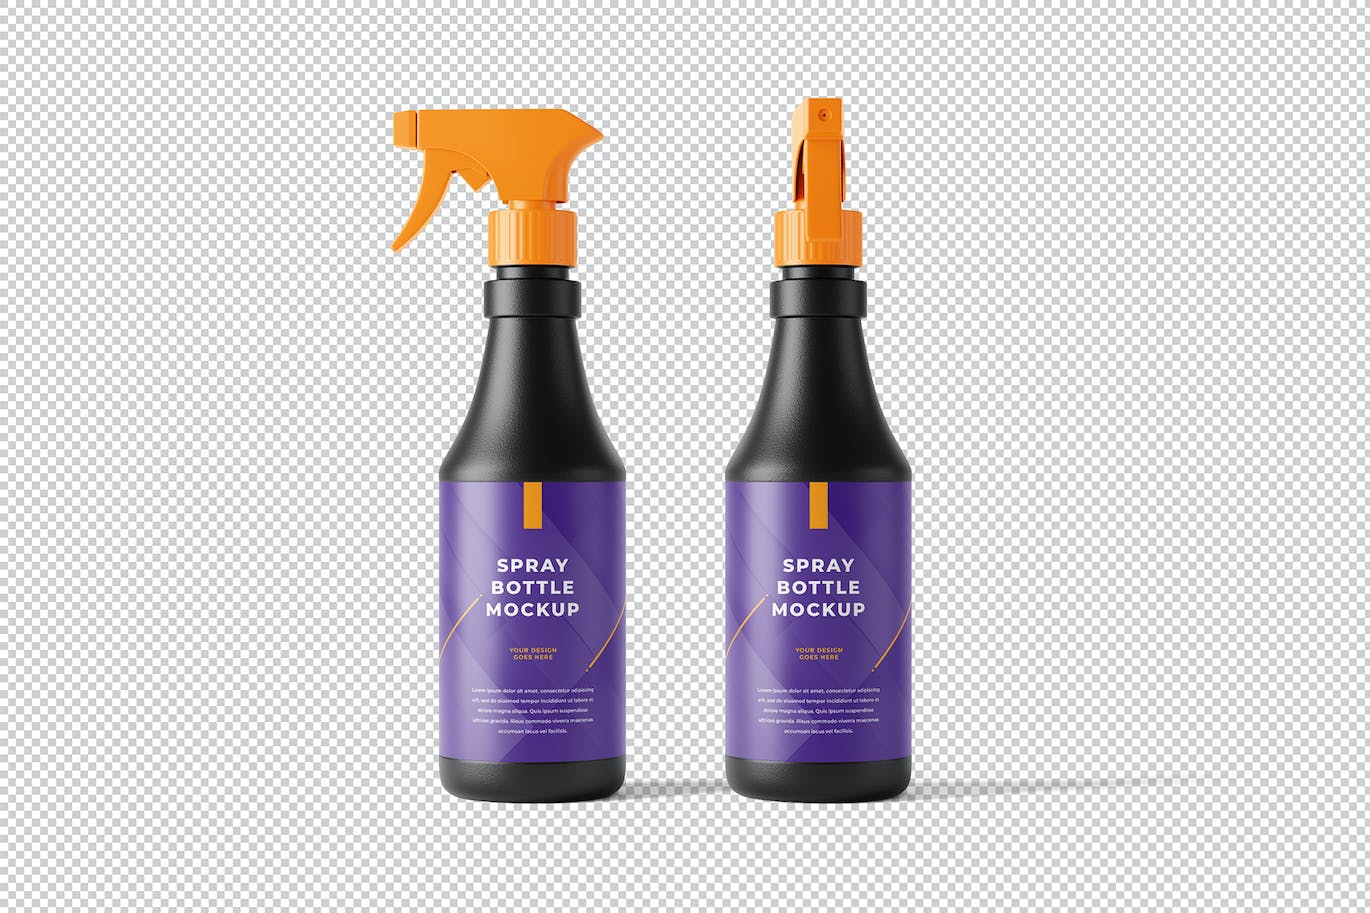 喷雾清洁剂瓶包装设计样机图 Spray Bottle Mockup 样机素材 第5张